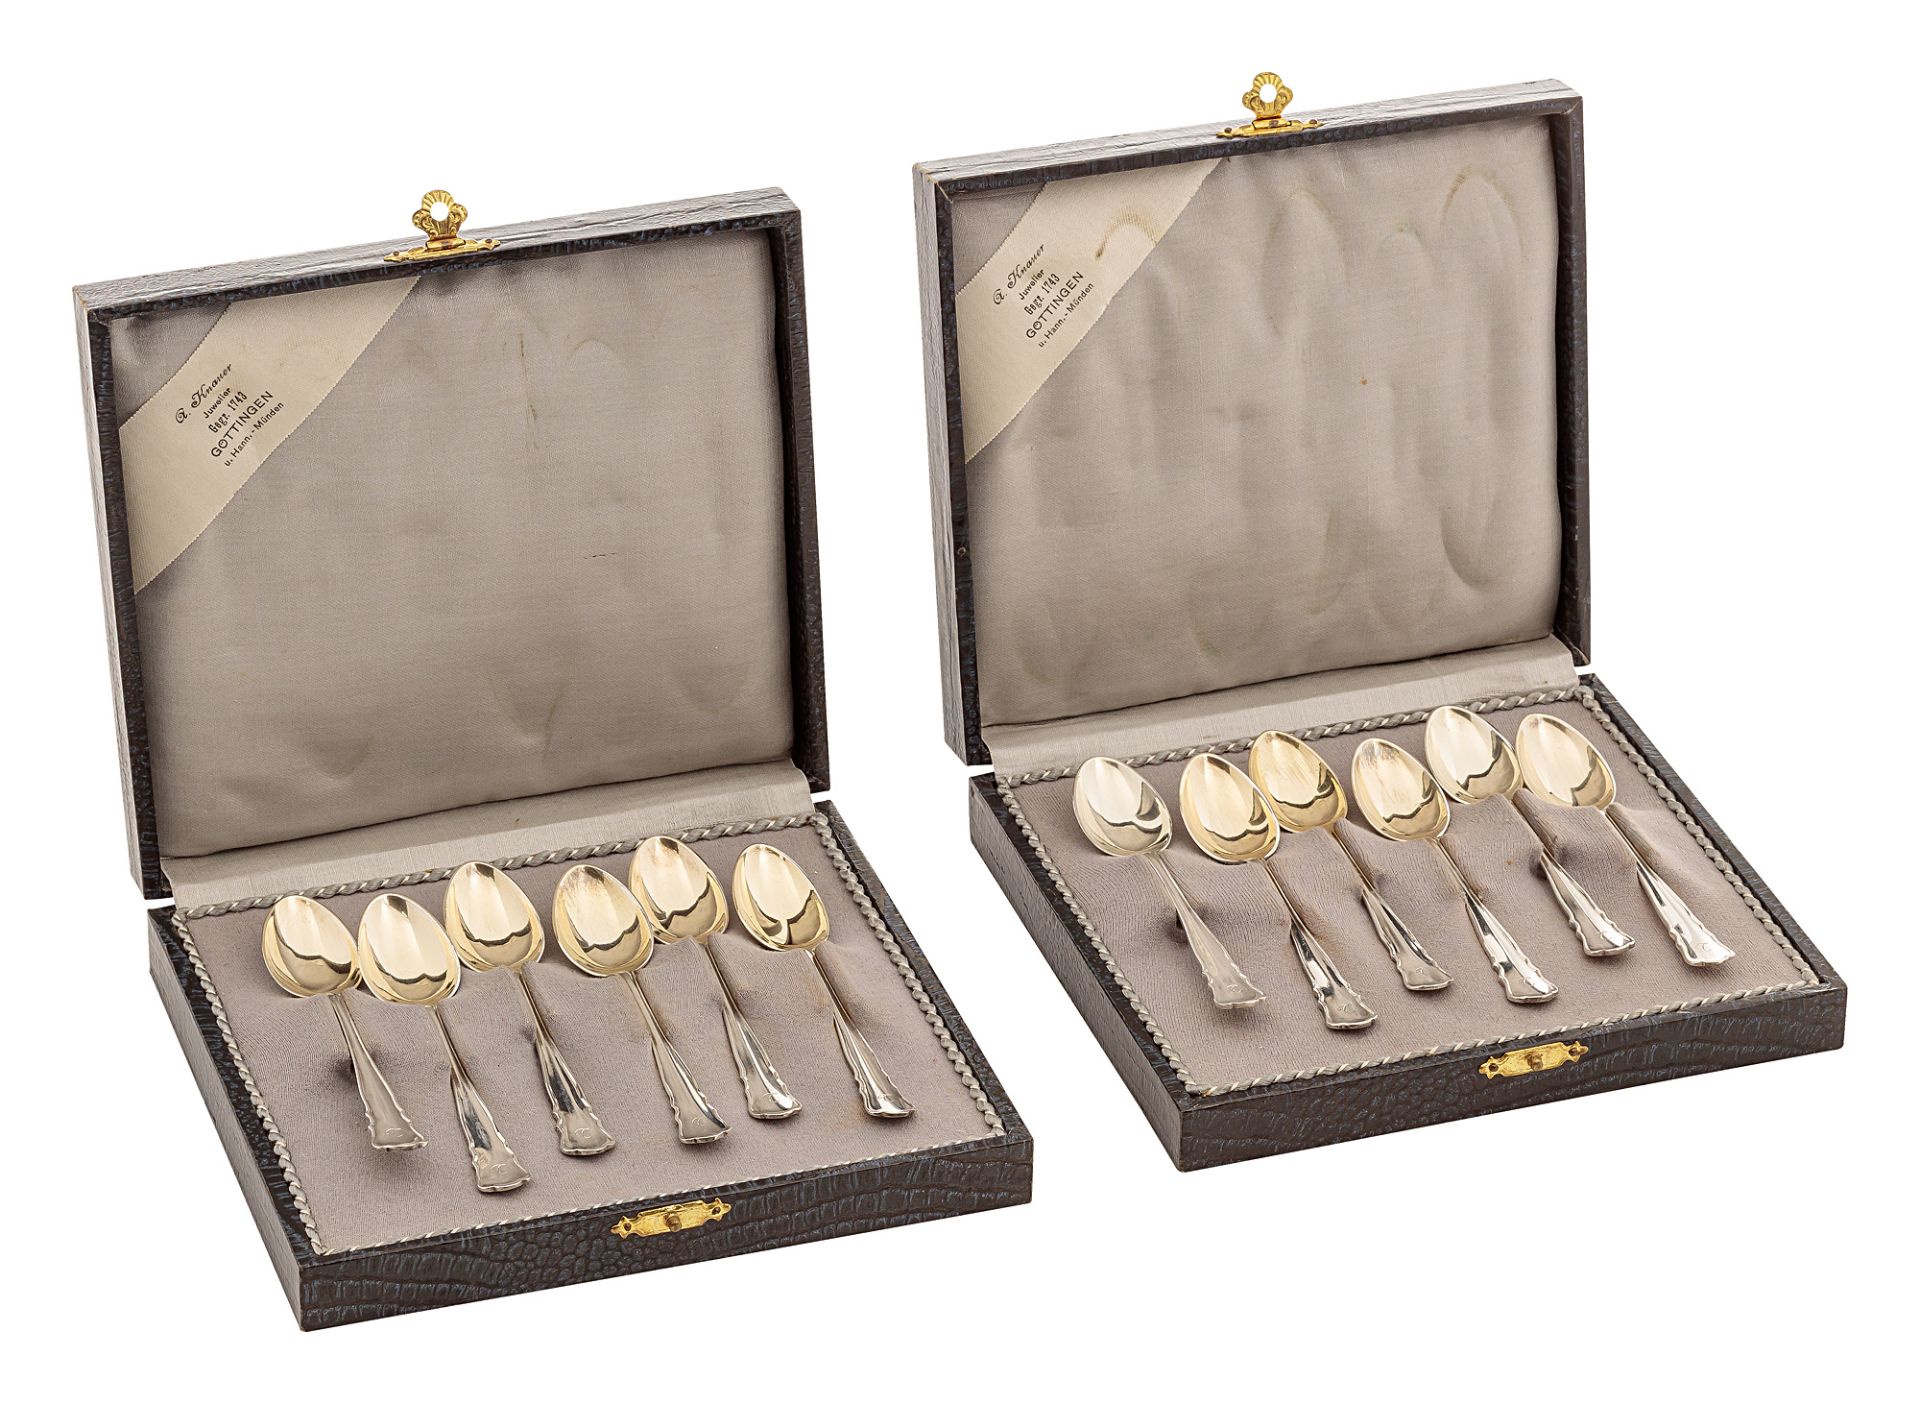 Twelve mocha spoons in cases